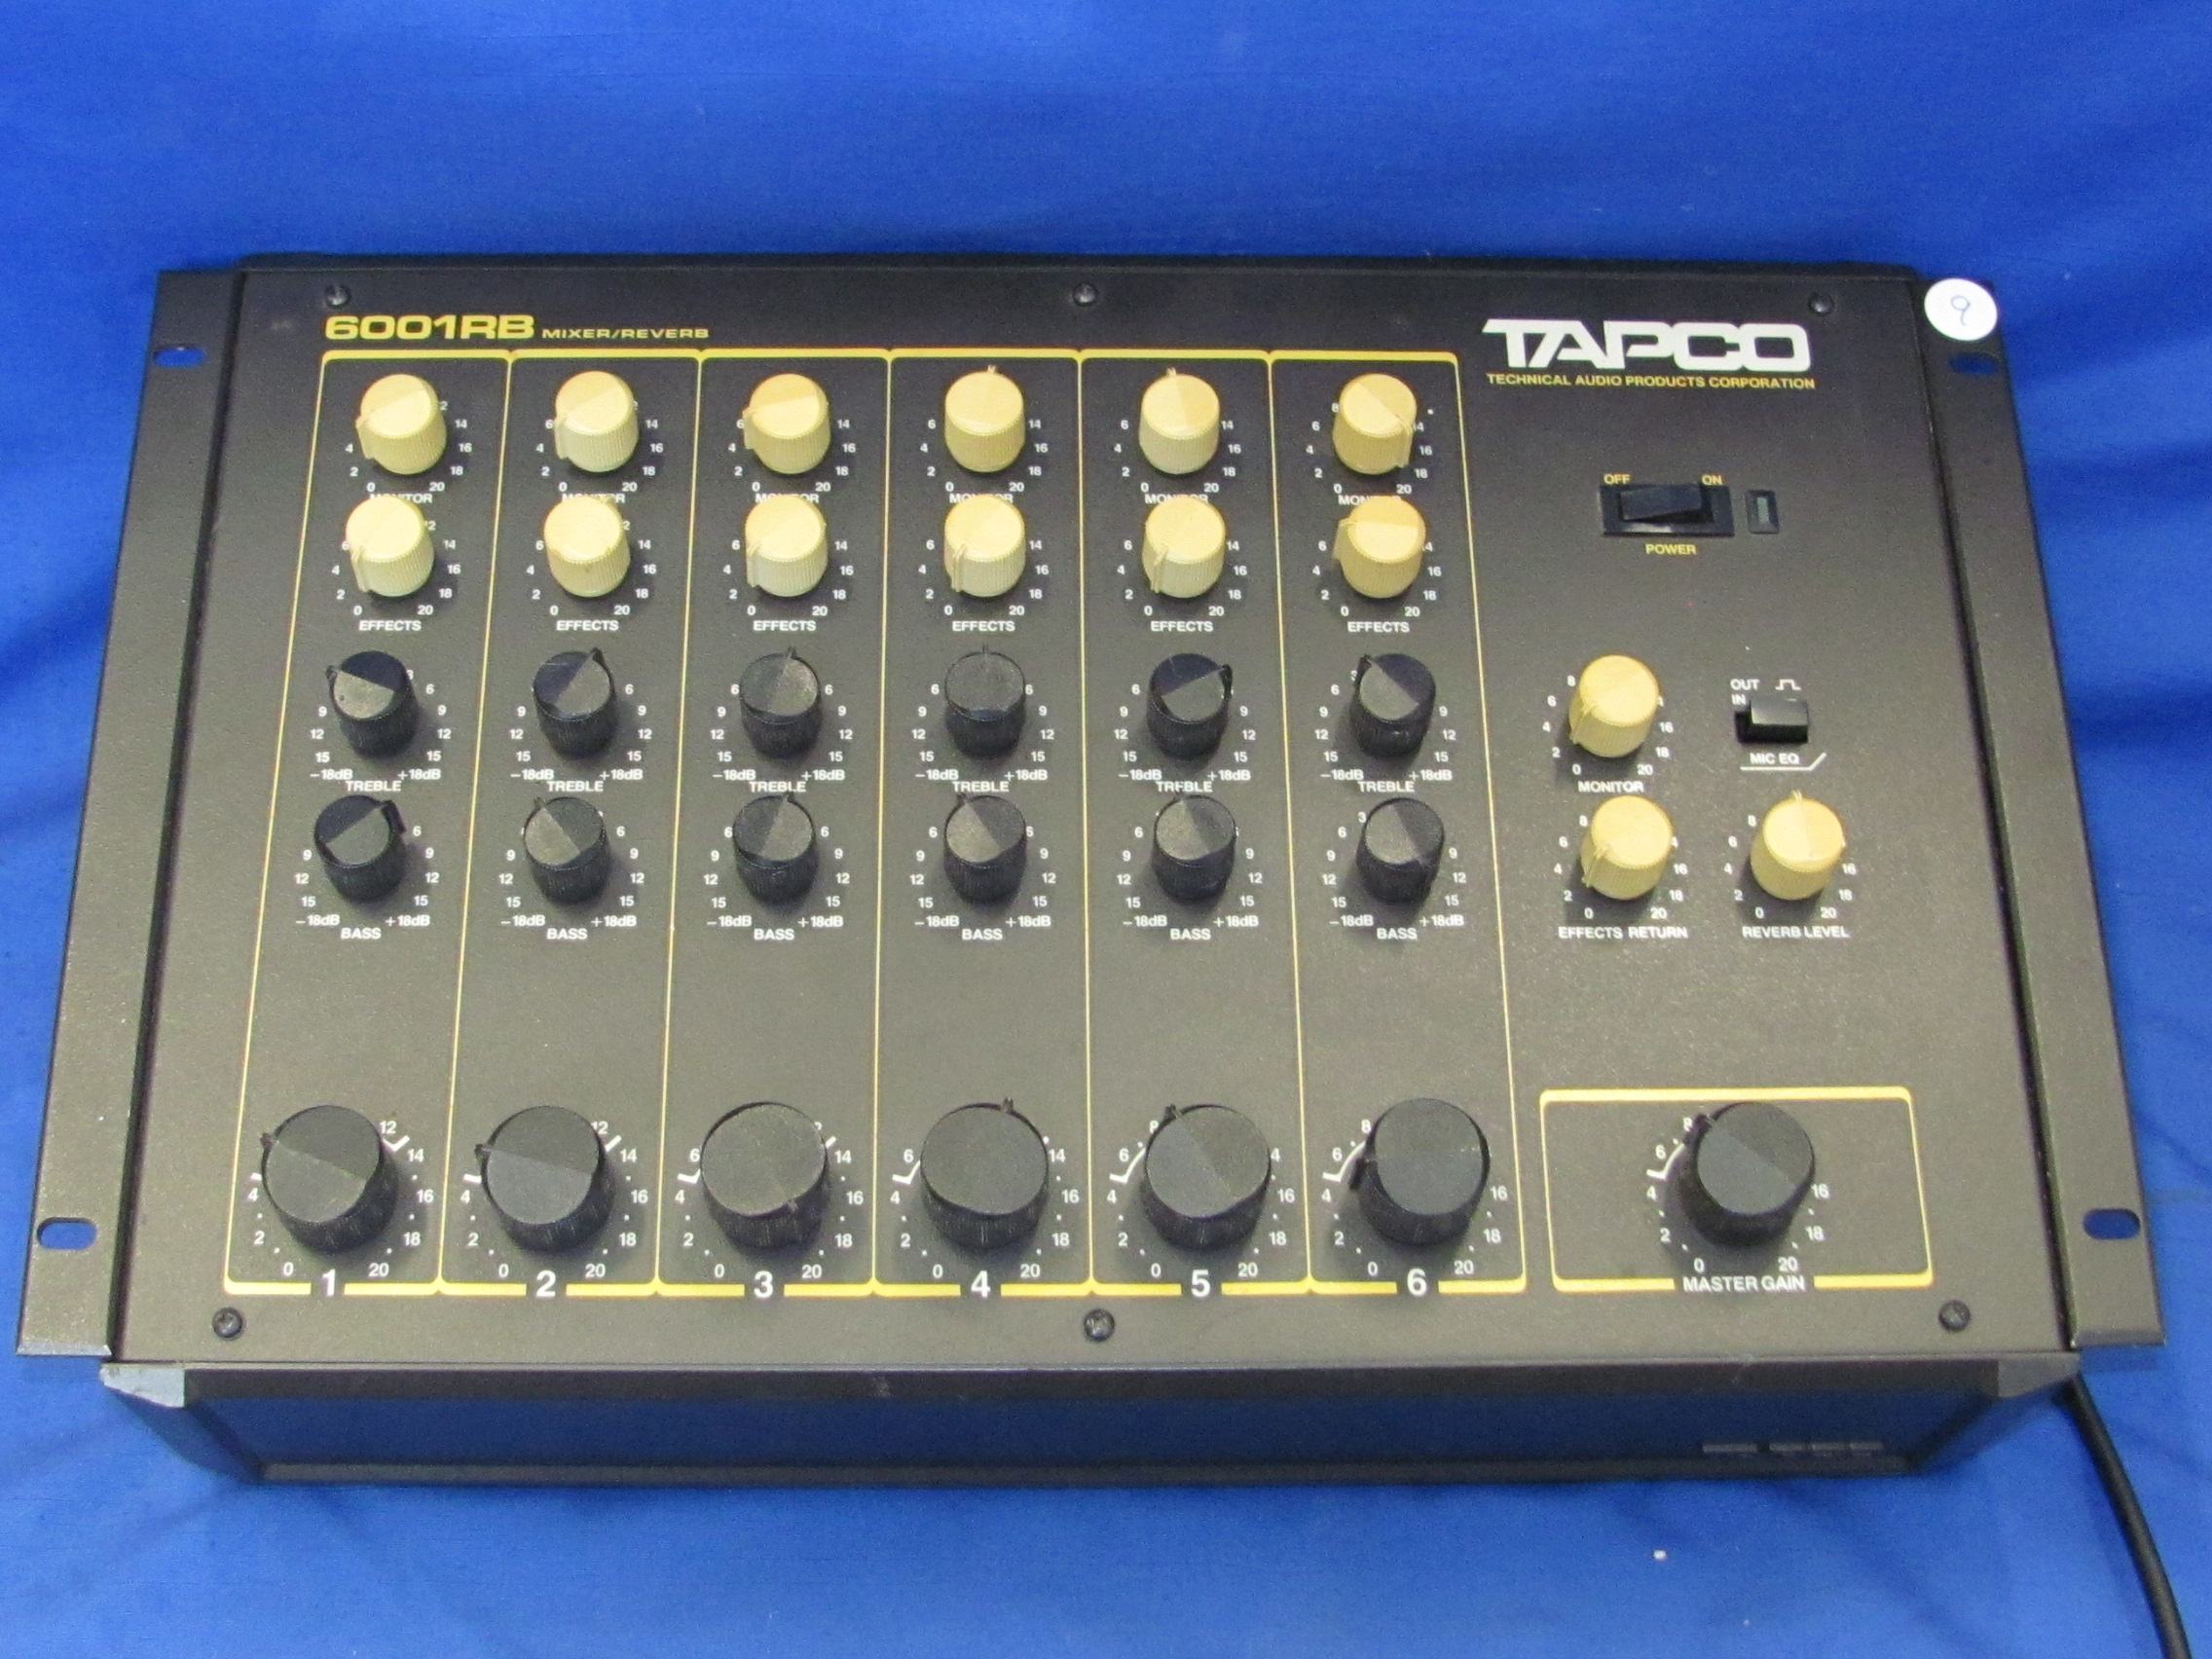 Tapco Reverb 6001RB Mixer | Proxibid